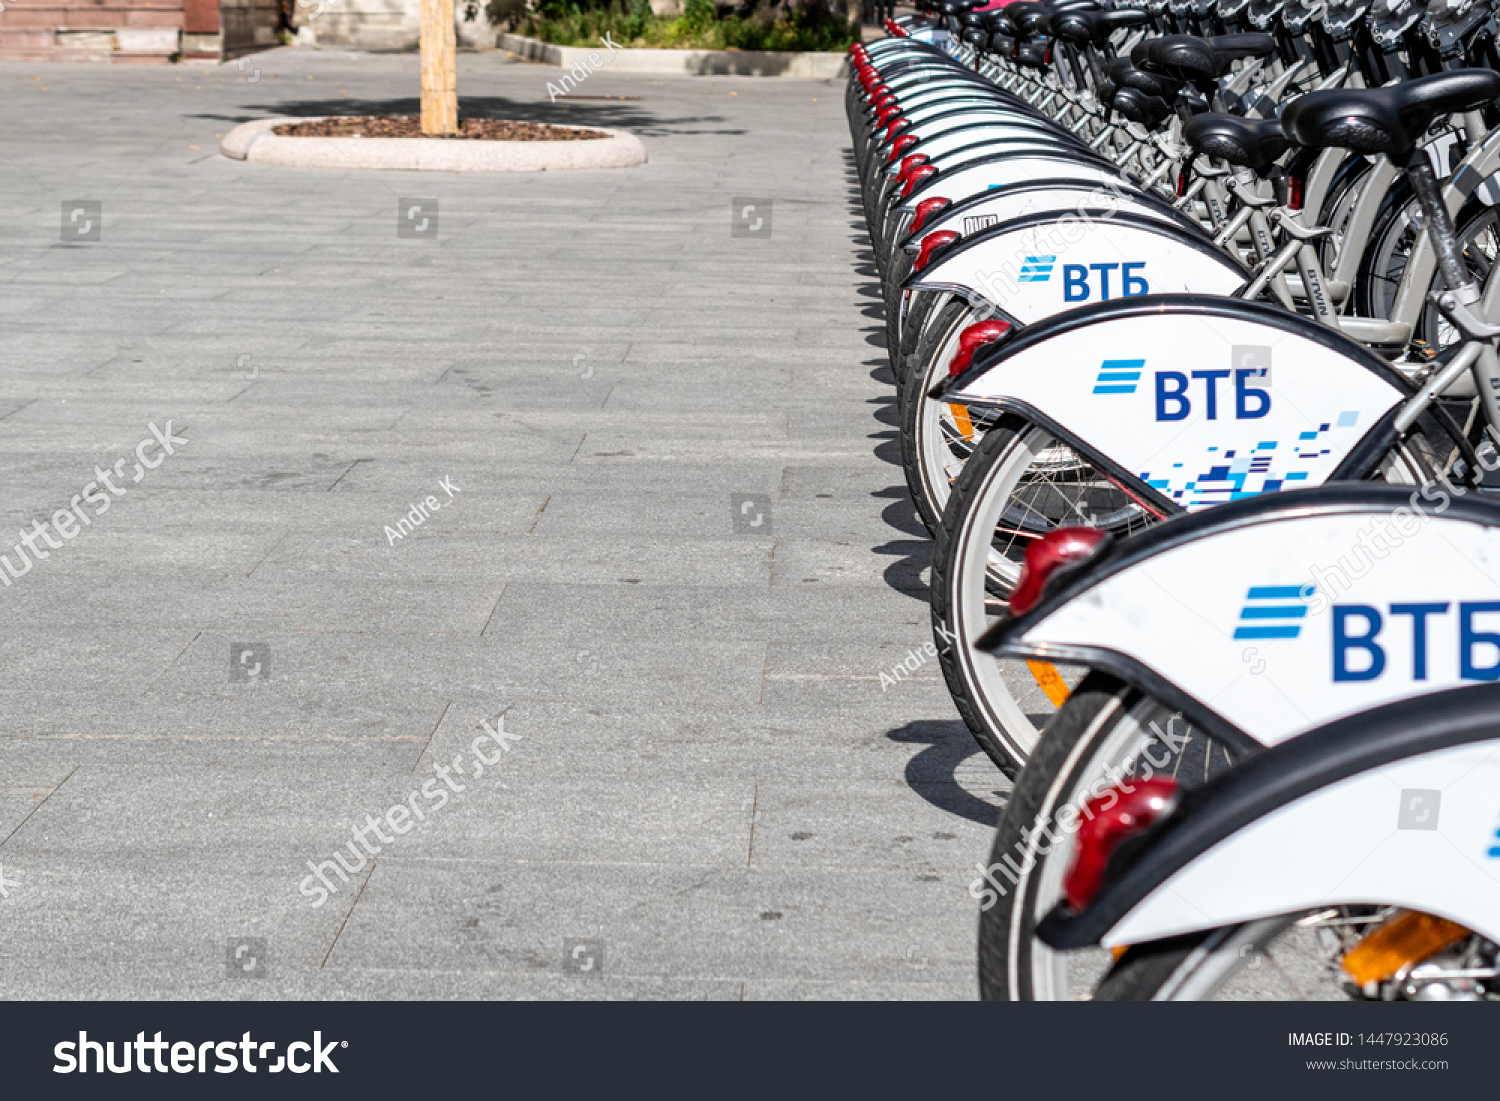 vtb bike center